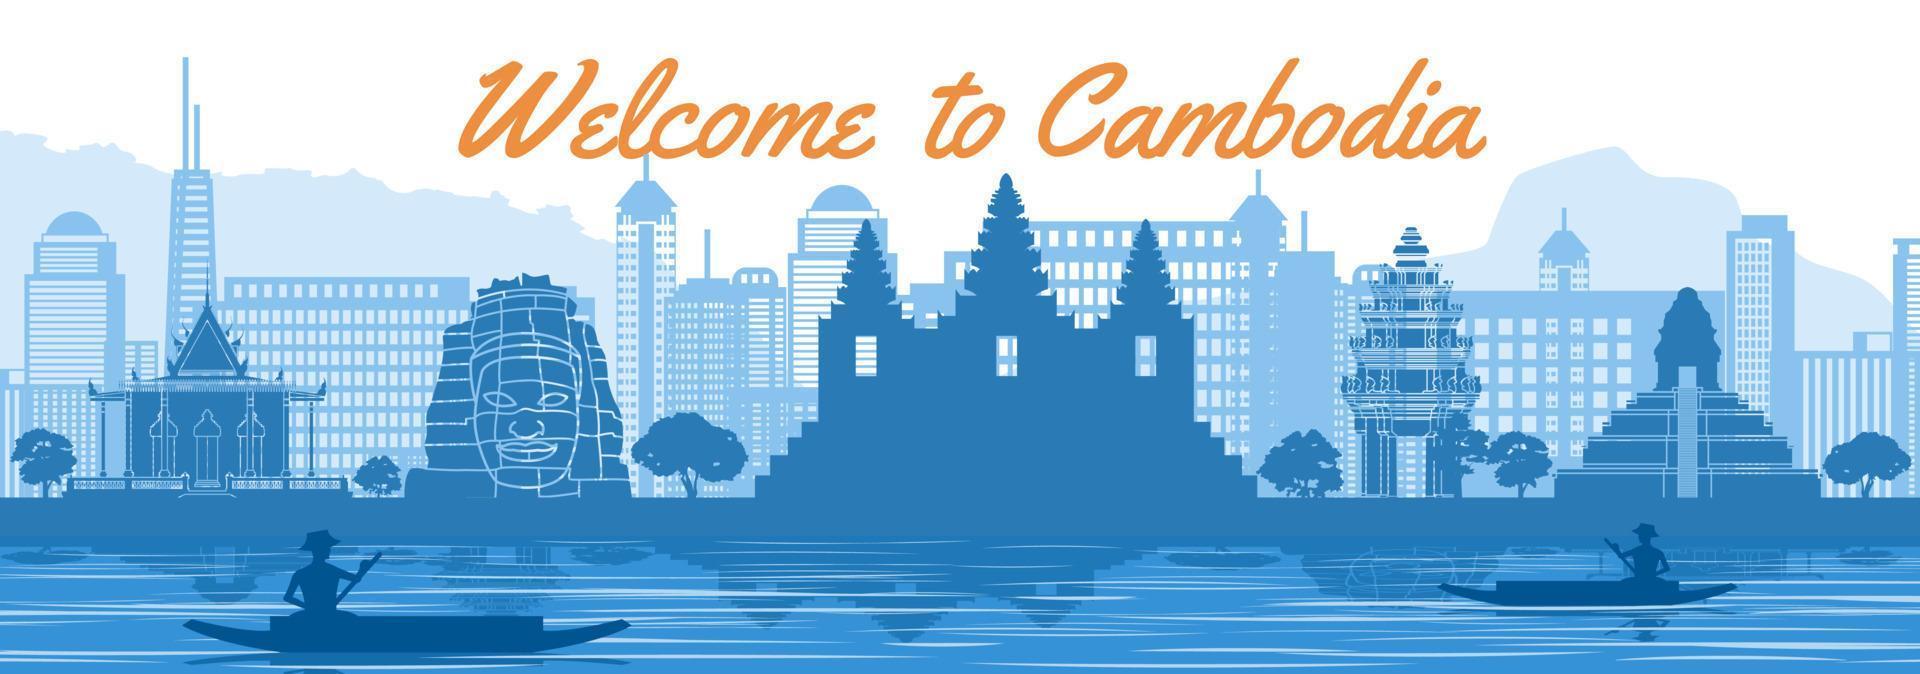 Cambodja beroemde bezienswaardigheid silhouetstijl achter rivier en boot en voor torens vector